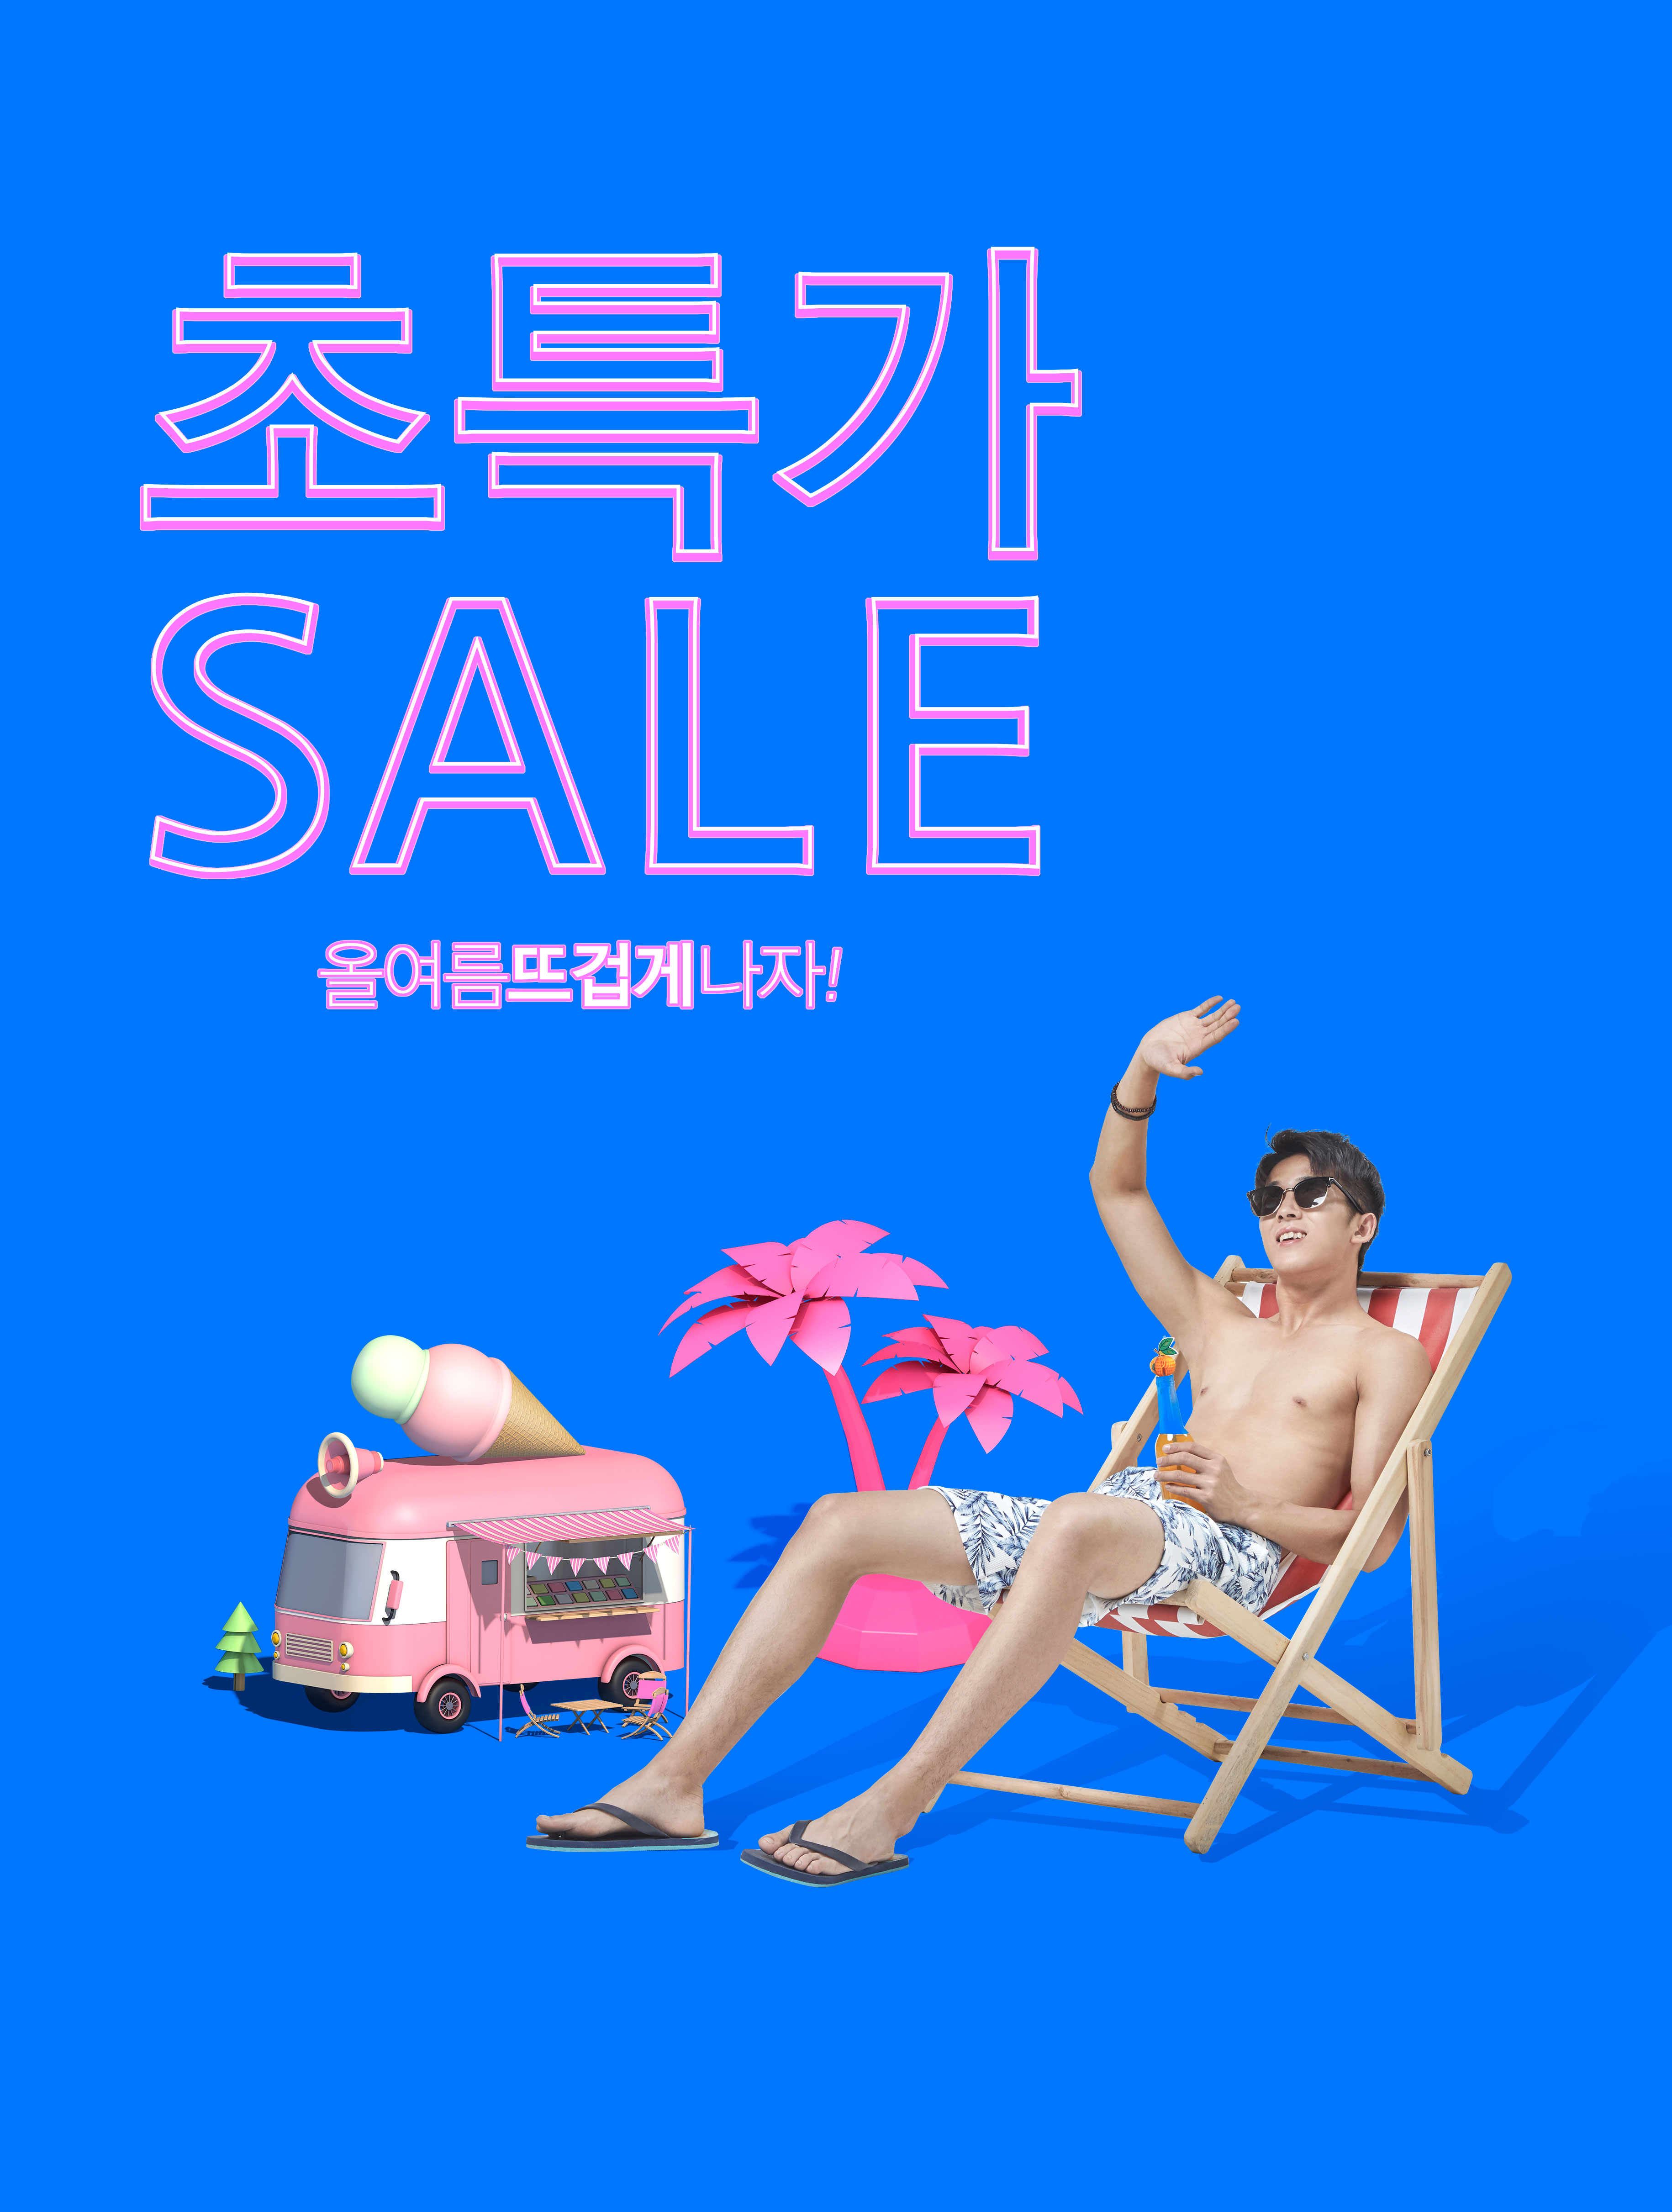 酷暑夏季度假活动广告海报设计套装[PSD]插图(4)